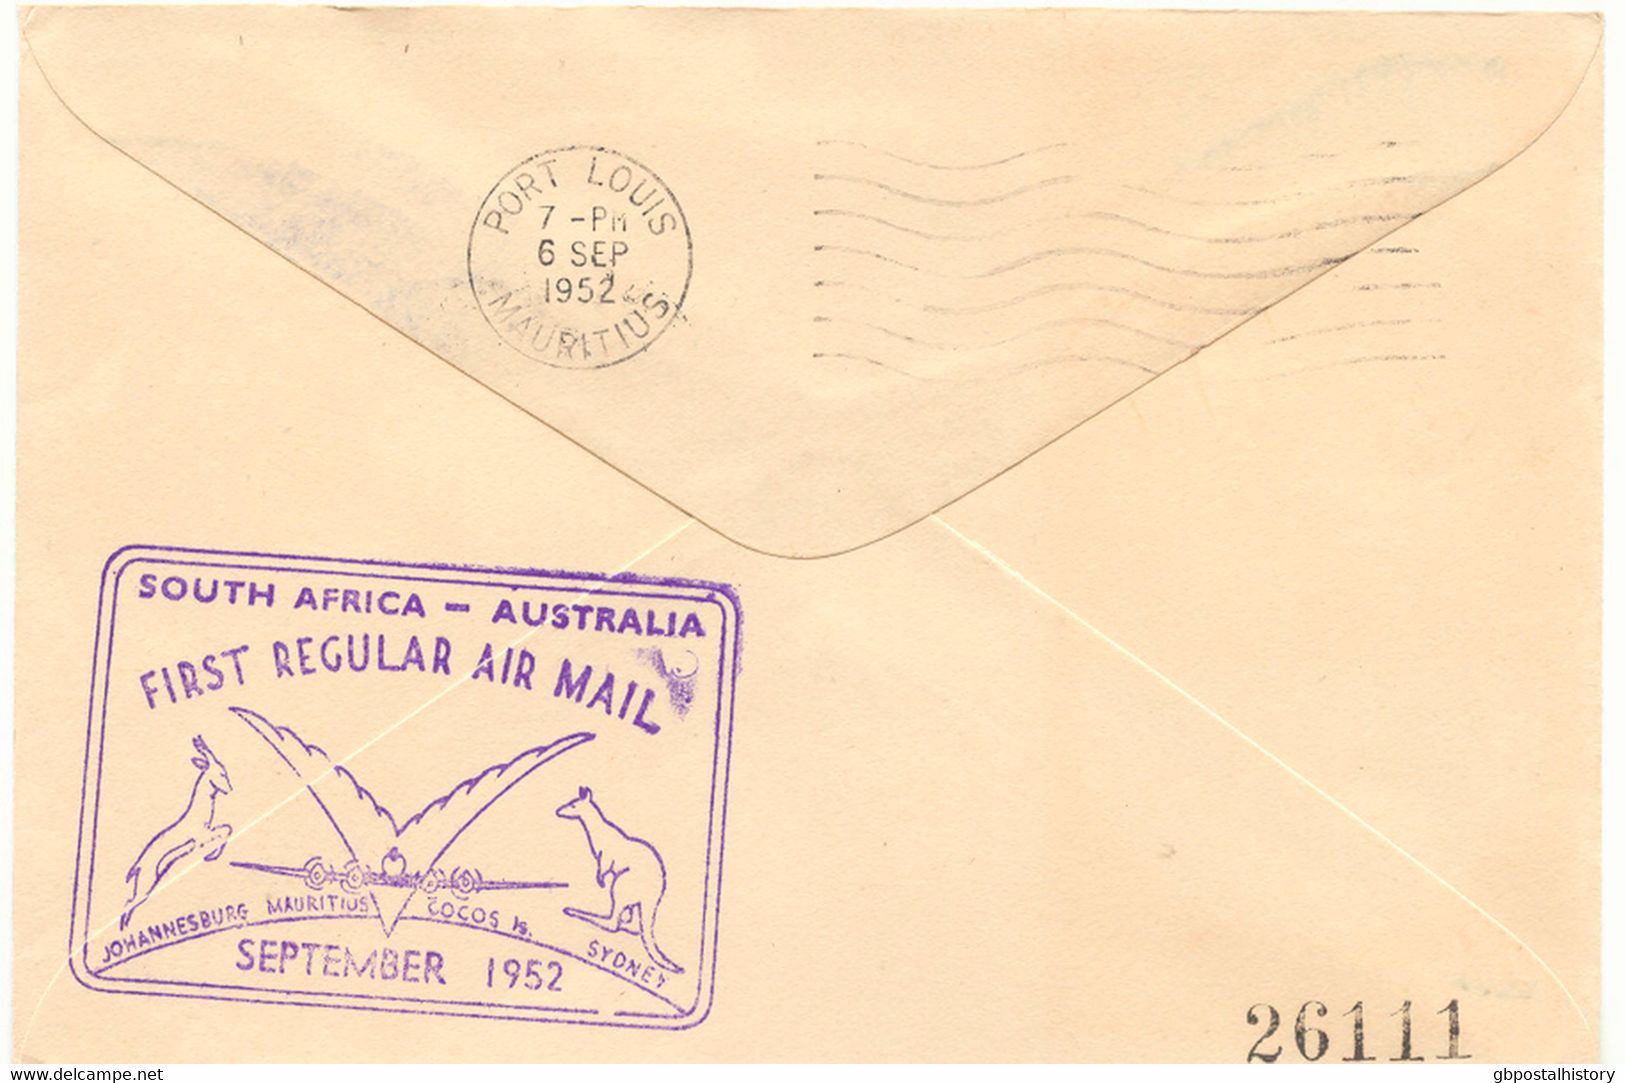 SÜDAFRIKA 1952 Mischfrankatur A. 3 Selt. Kab.-Erstflüge Der Qantas Empire Airways, Teilstrecken "JOHANNESBURG - COCOS IS - Airmail